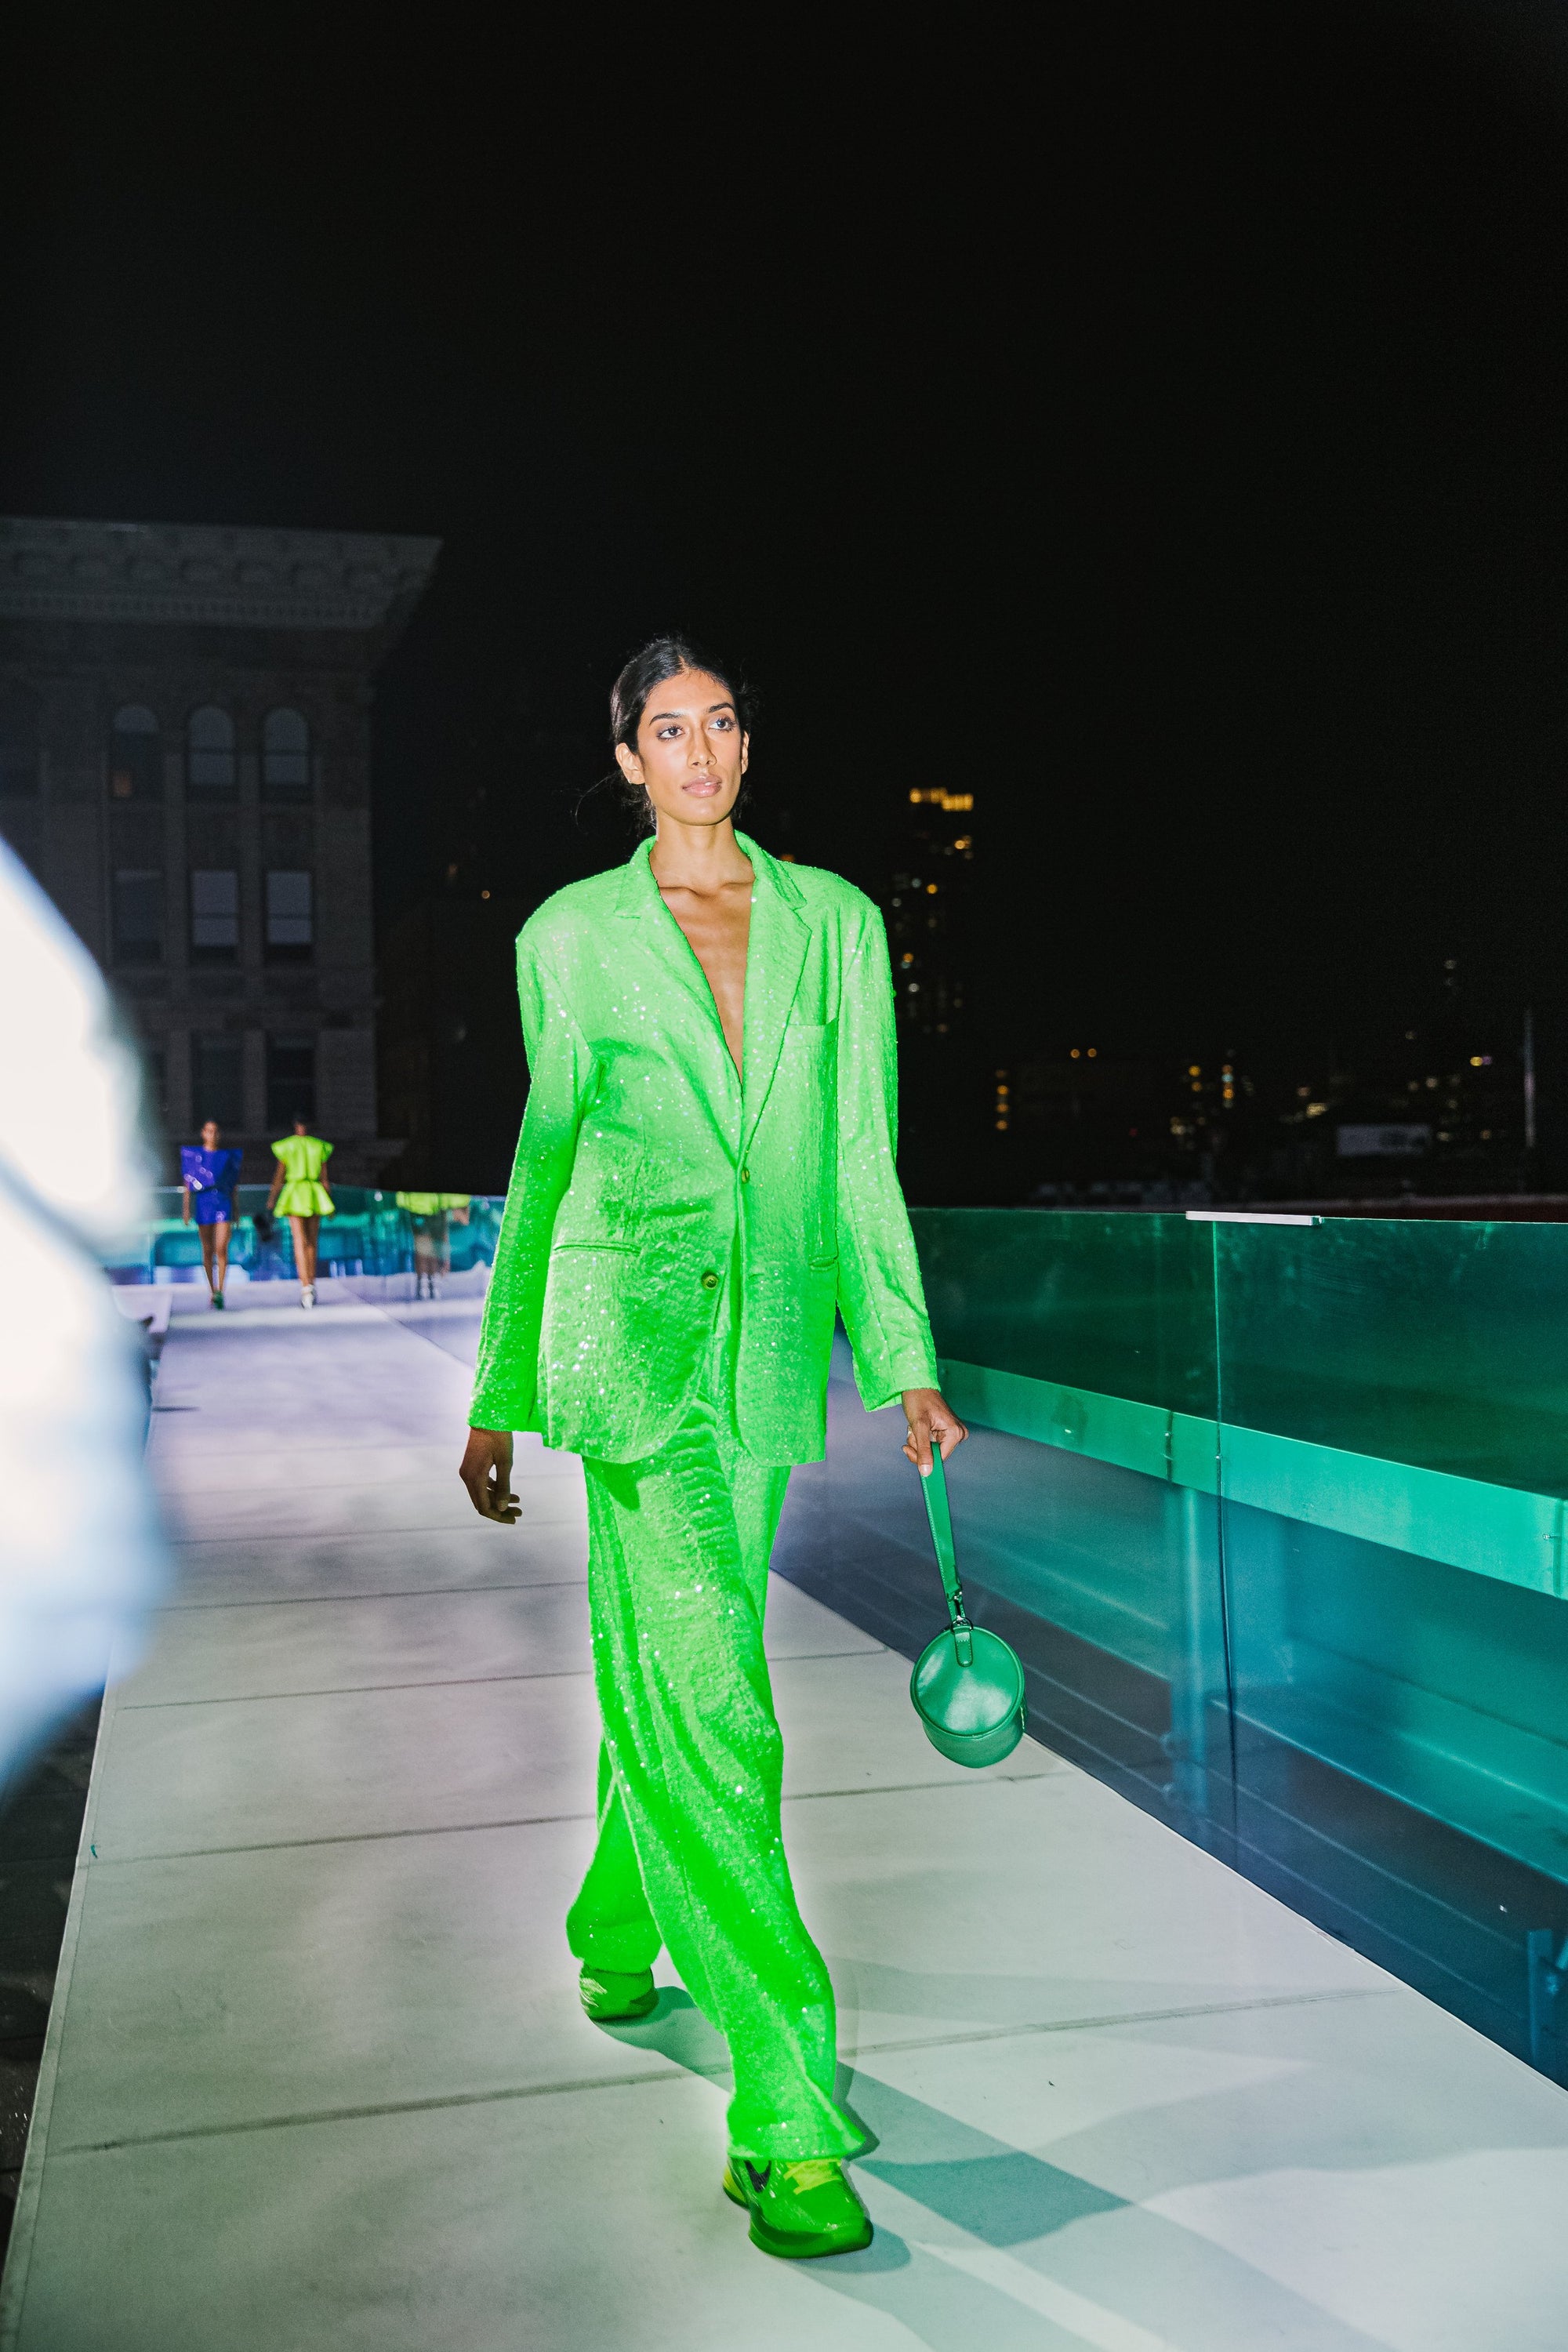 Suit Jacket in Neon Green Sequin